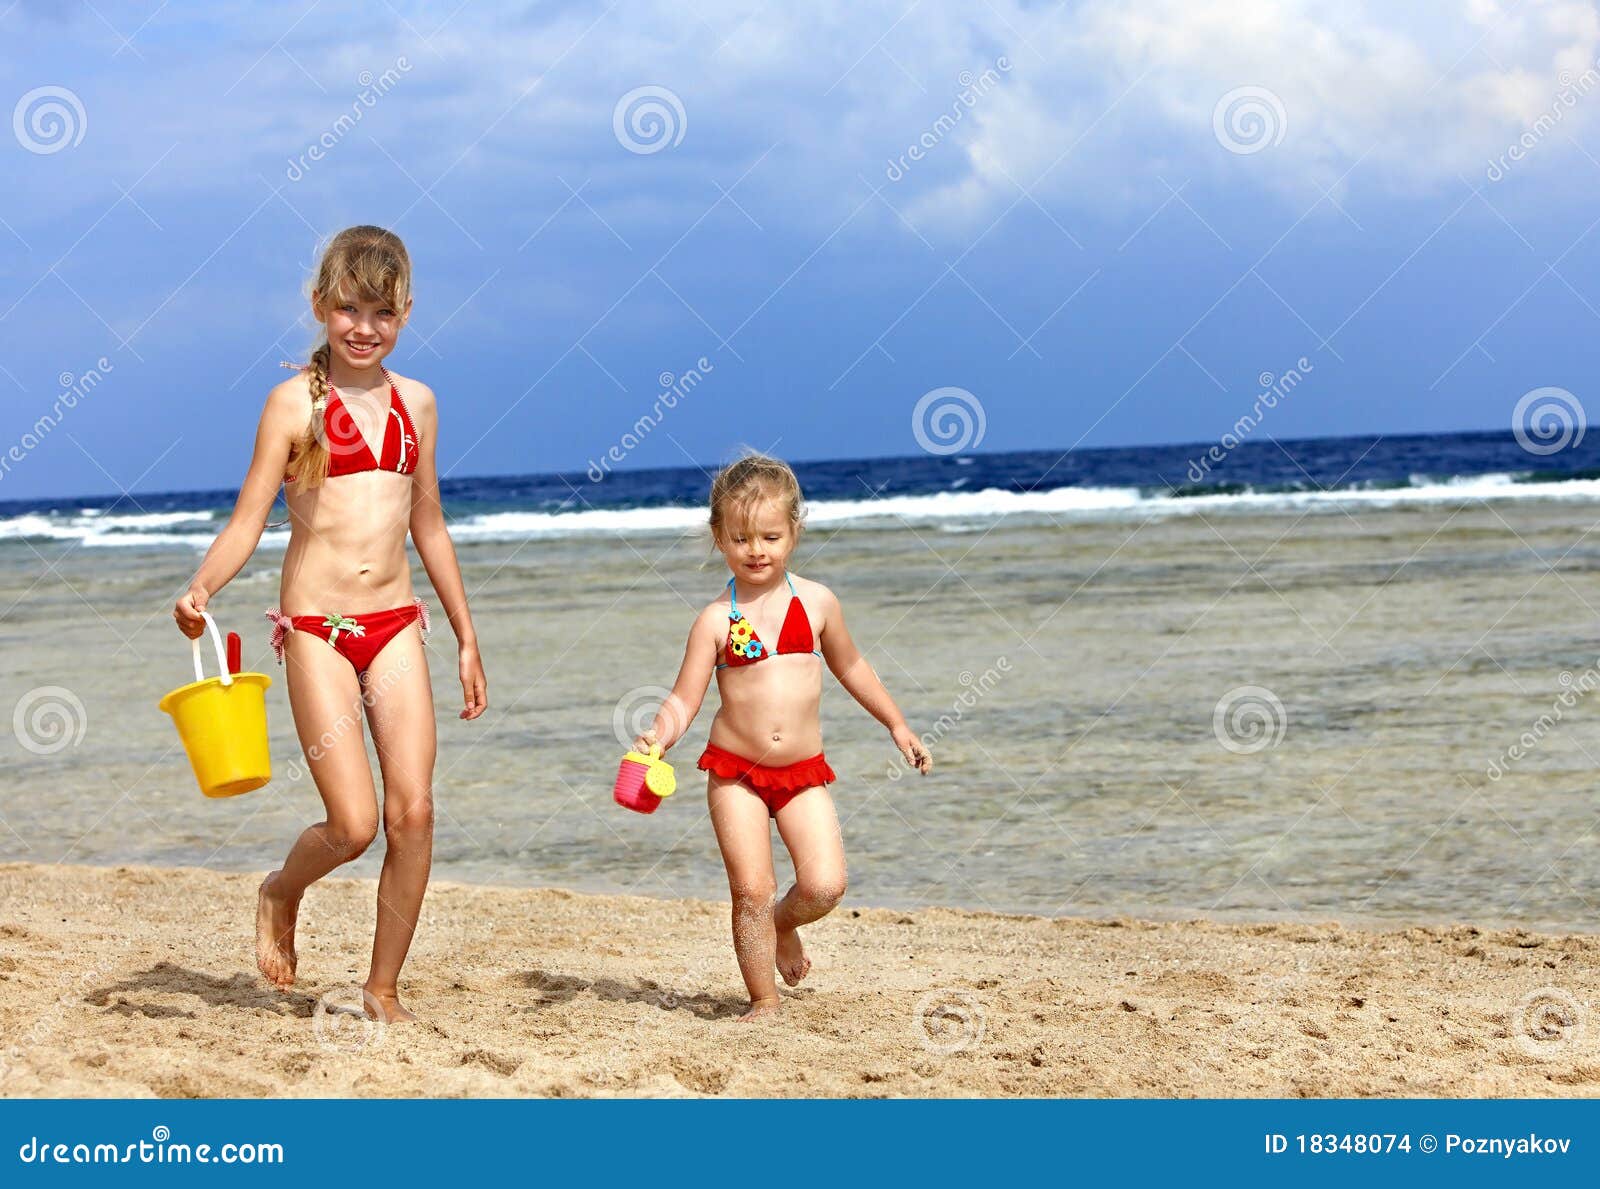 фото детей на голом пляже фото 7